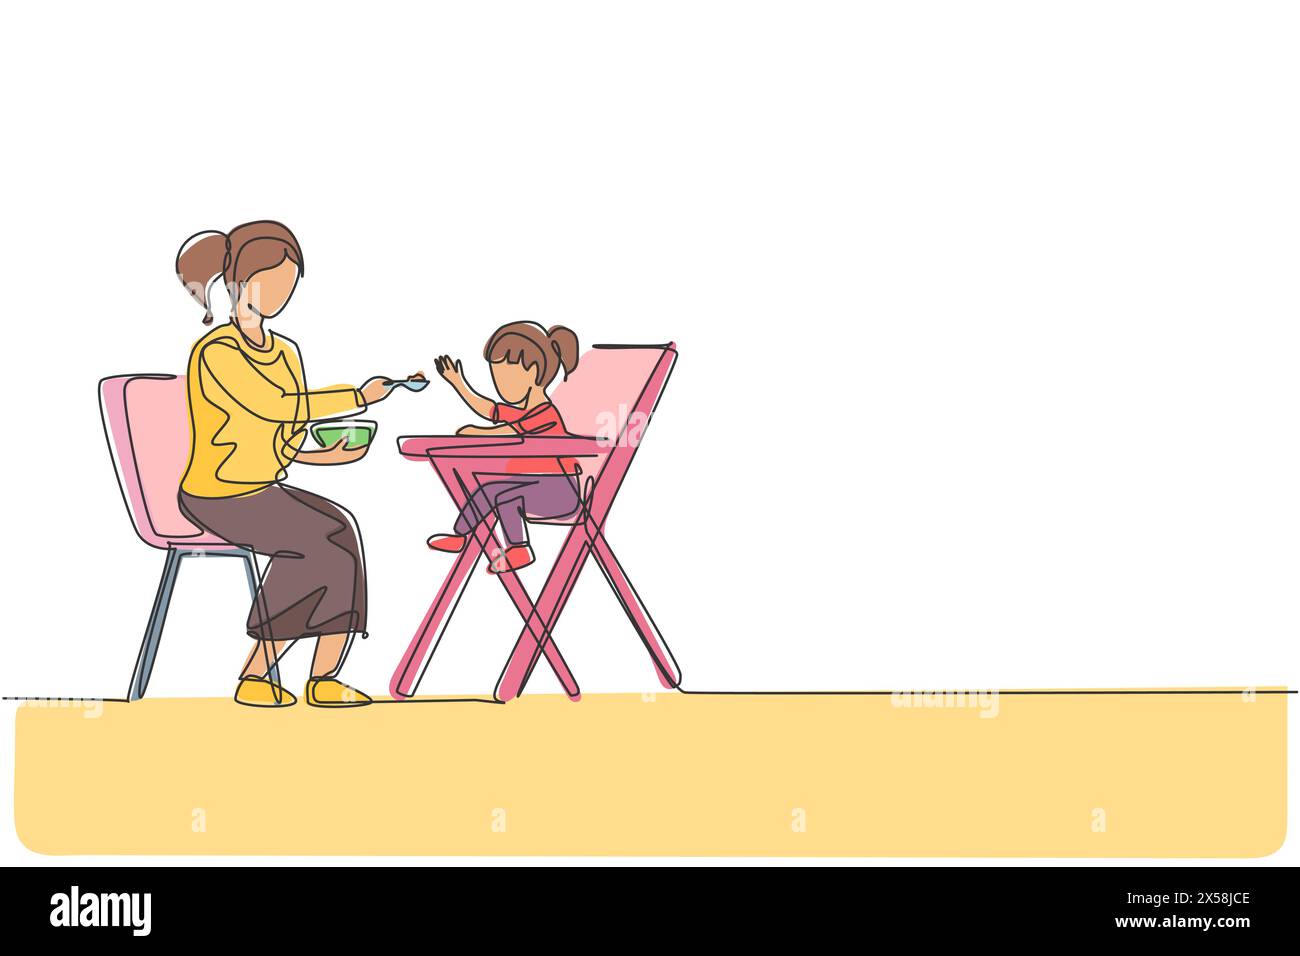 Una linea continua che disegna la giovane mamma che dà da mangiare a sua figlia un pasto che si siede sulla sedia da pranzo del bambino, un'ottima genitorialità. Concetto di cura per gli amanti della famiglia. Alla moda Illustrazione Vettoriale